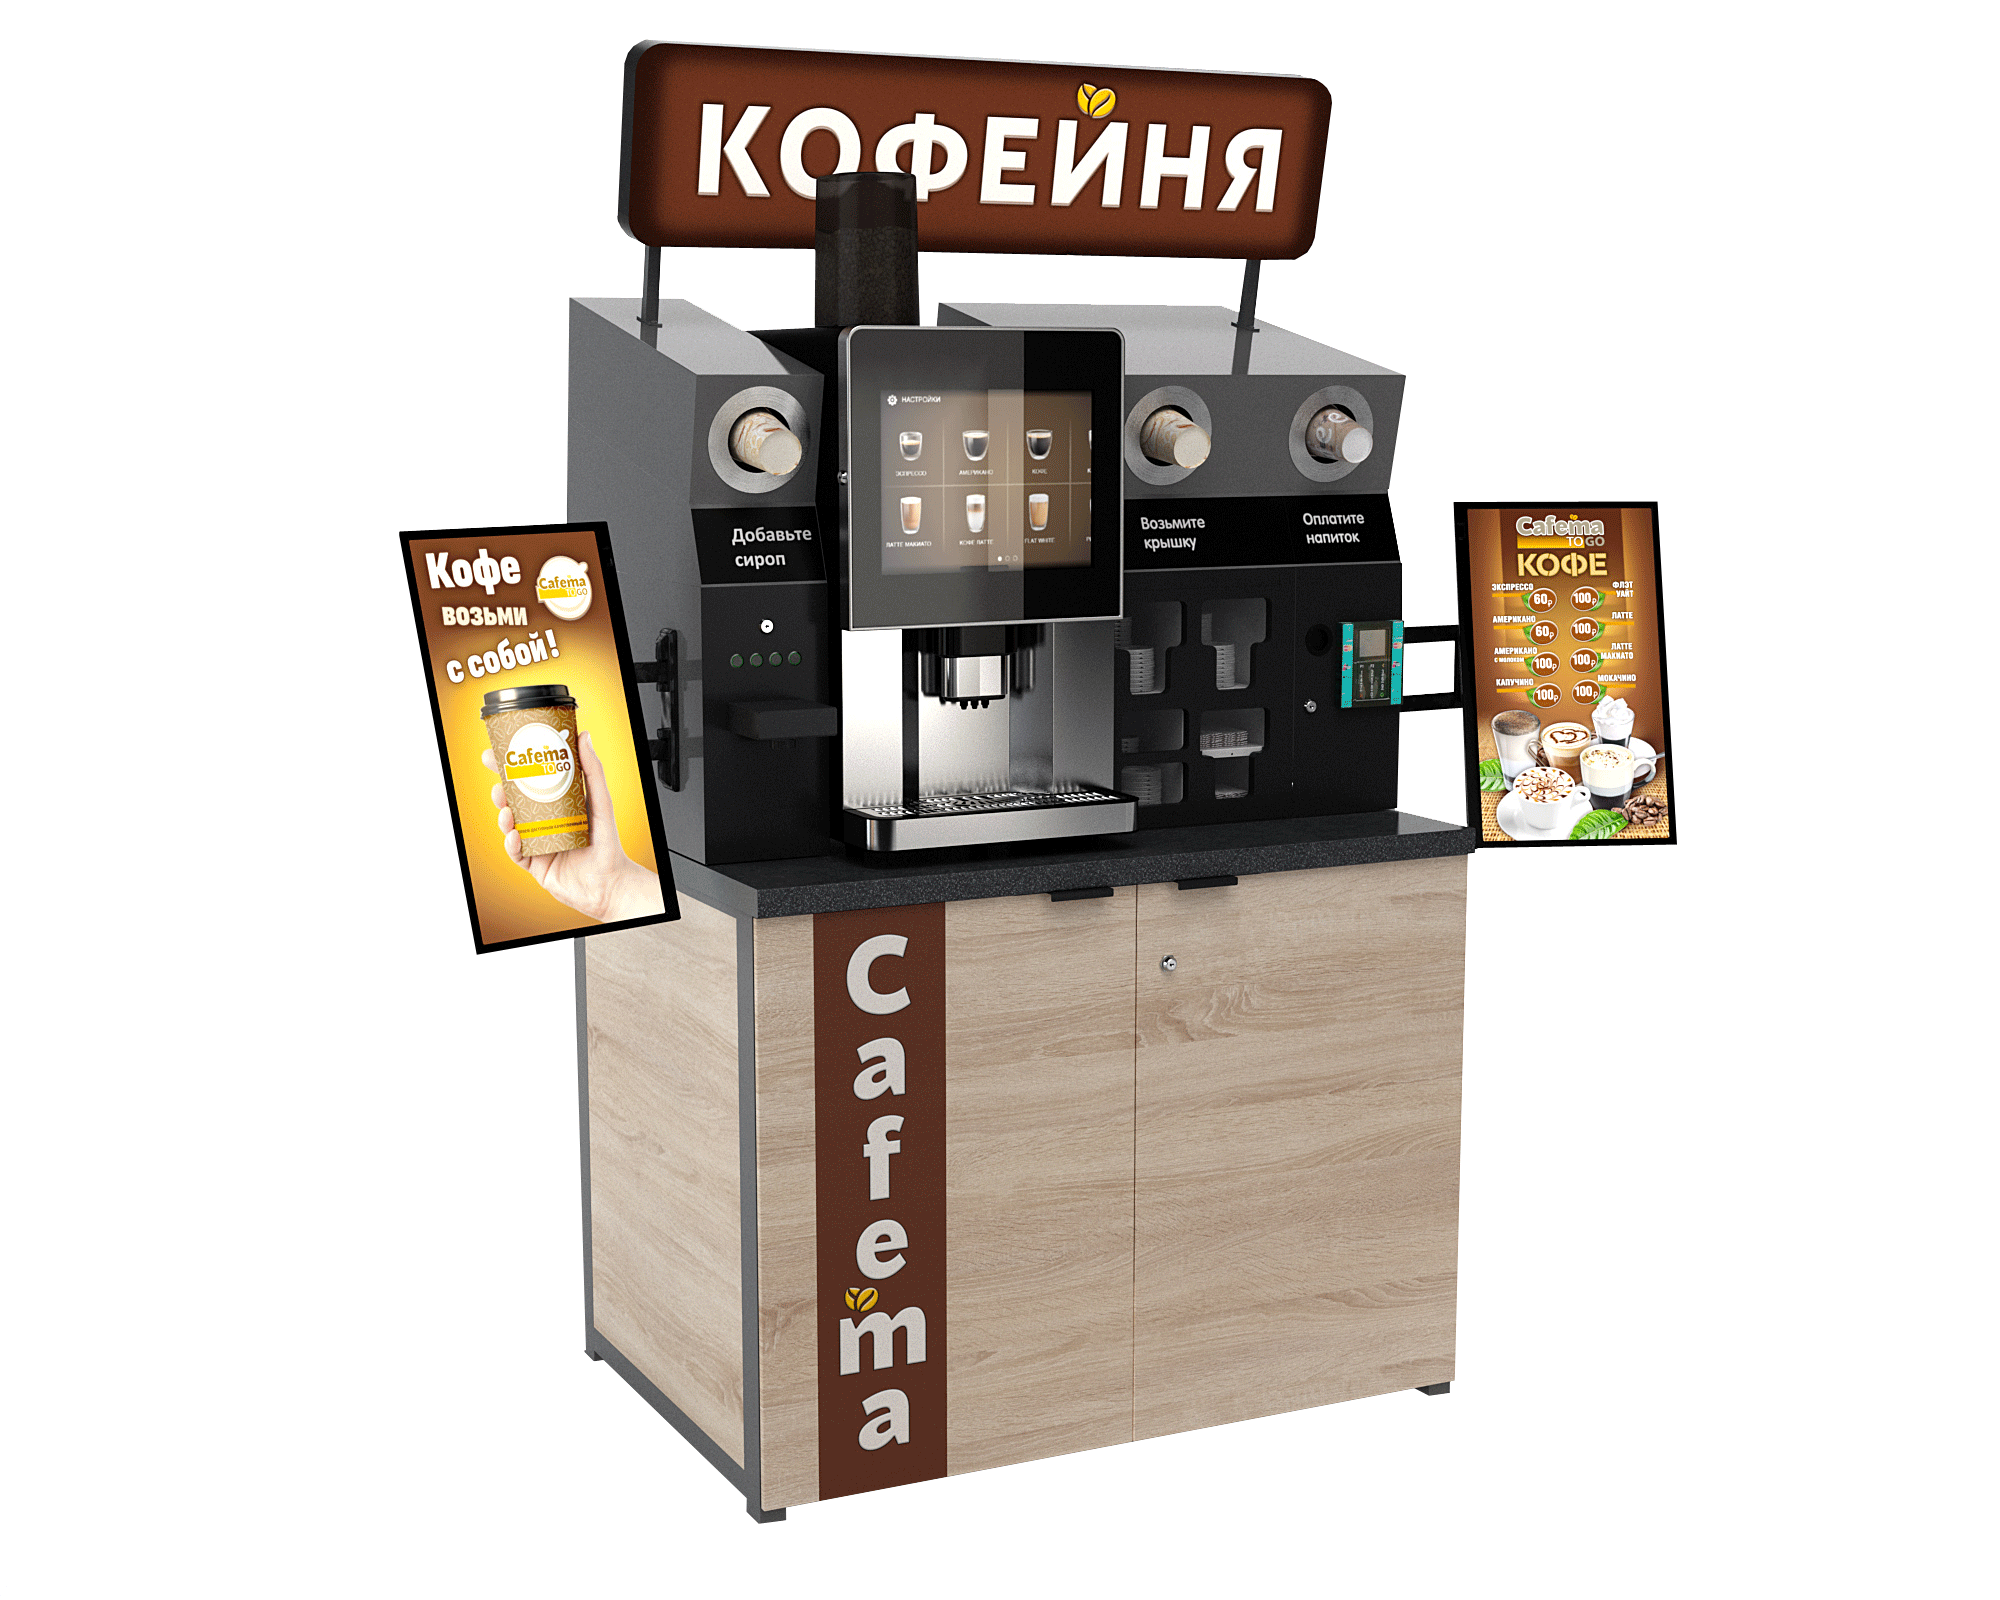 Cafema to go аппарат. Автоматическая сиропная станция для кофемашины. Кофейня самообслуживания. Стойка для кофейни самообслуживания. Франшизы кофеен в казахстане